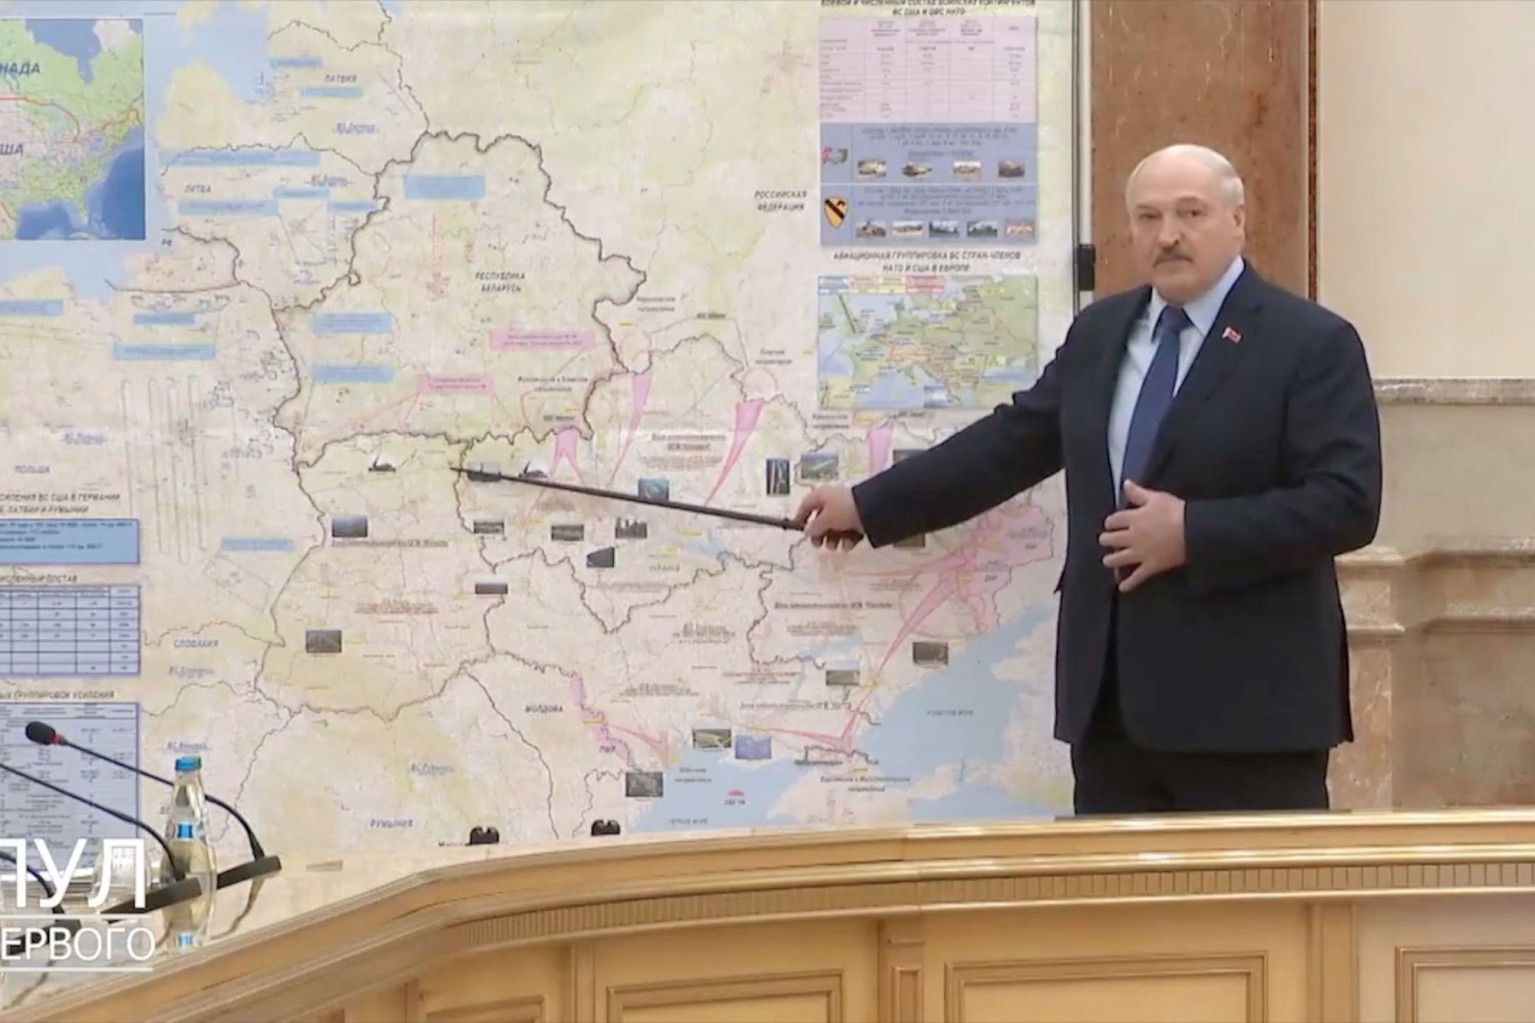 Ο Λουκασένκο της Λευκορωσίας φάνηκε να δείχνει τα ρωσικά σχέδια για εισβολή και στη…Μολδαβία